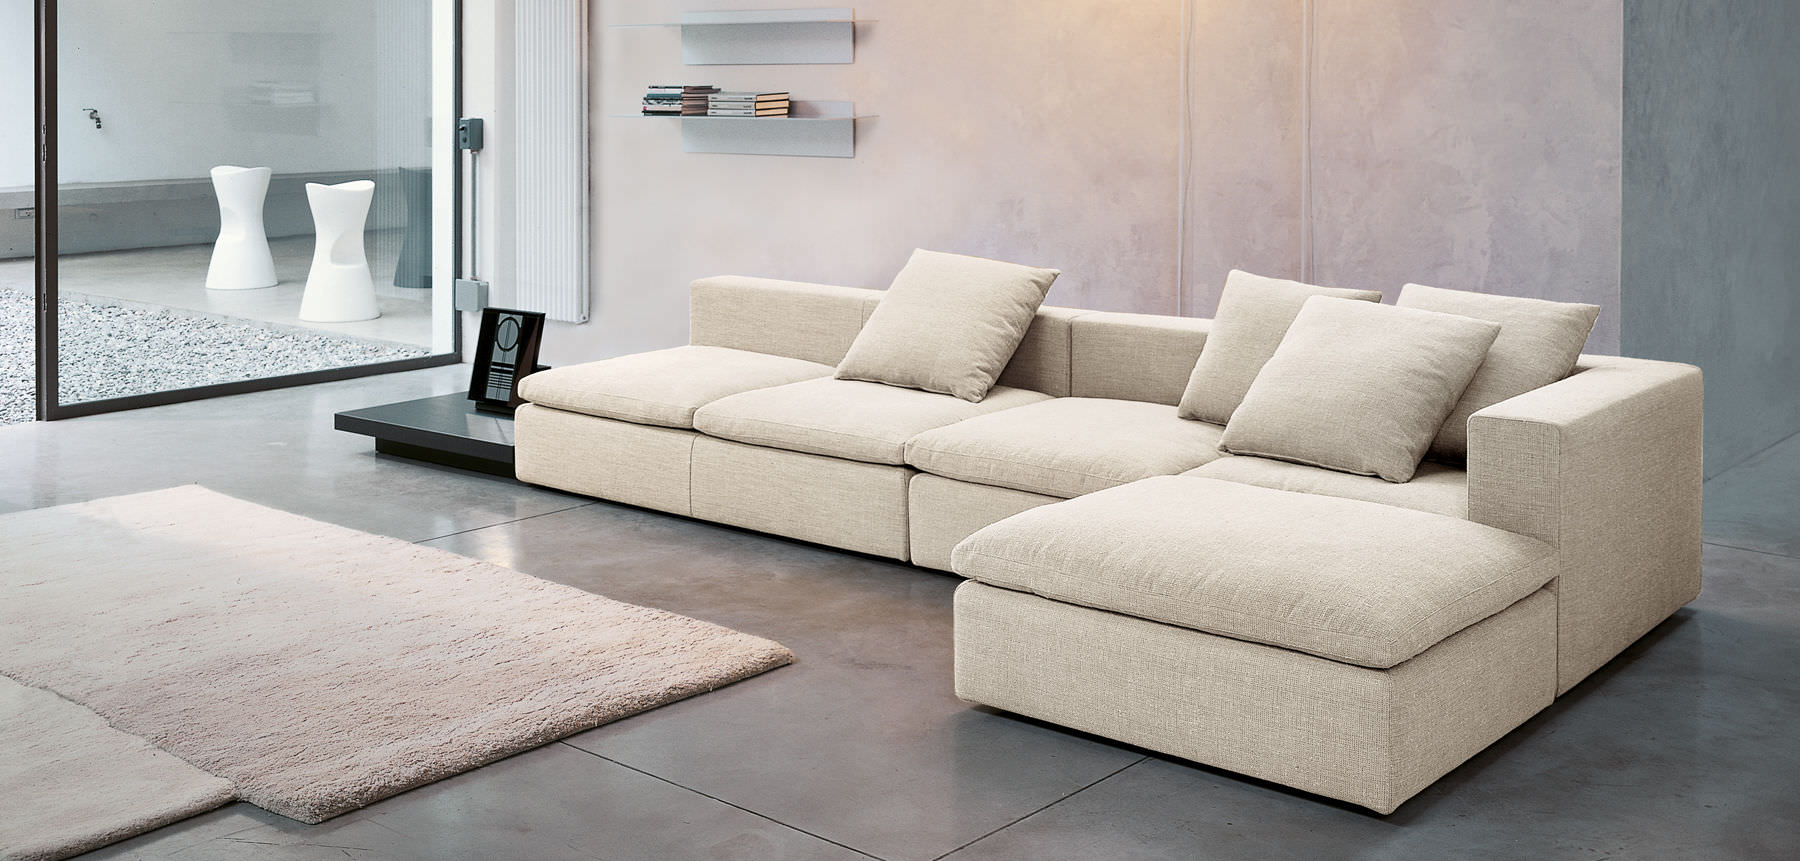 Уникальный мягкий угловой диван в интерьере